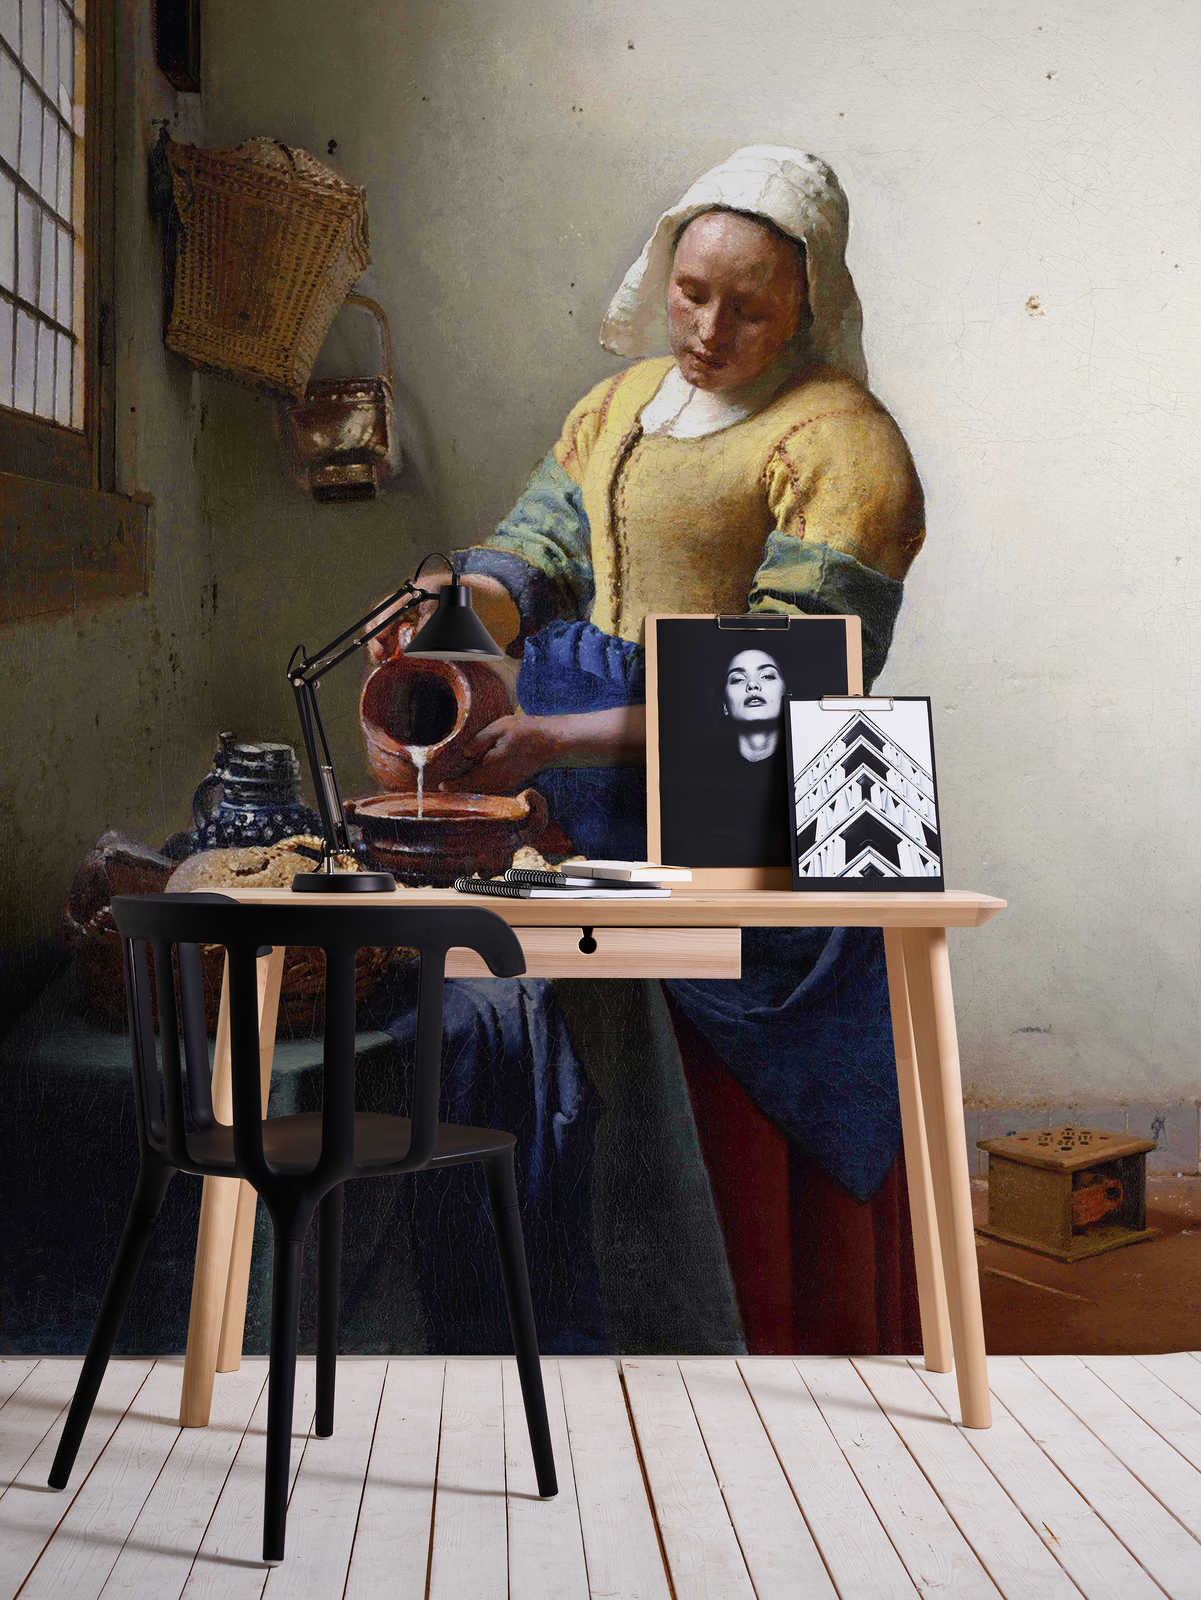             Maid with milk jug mural by Jan Vermeer
        